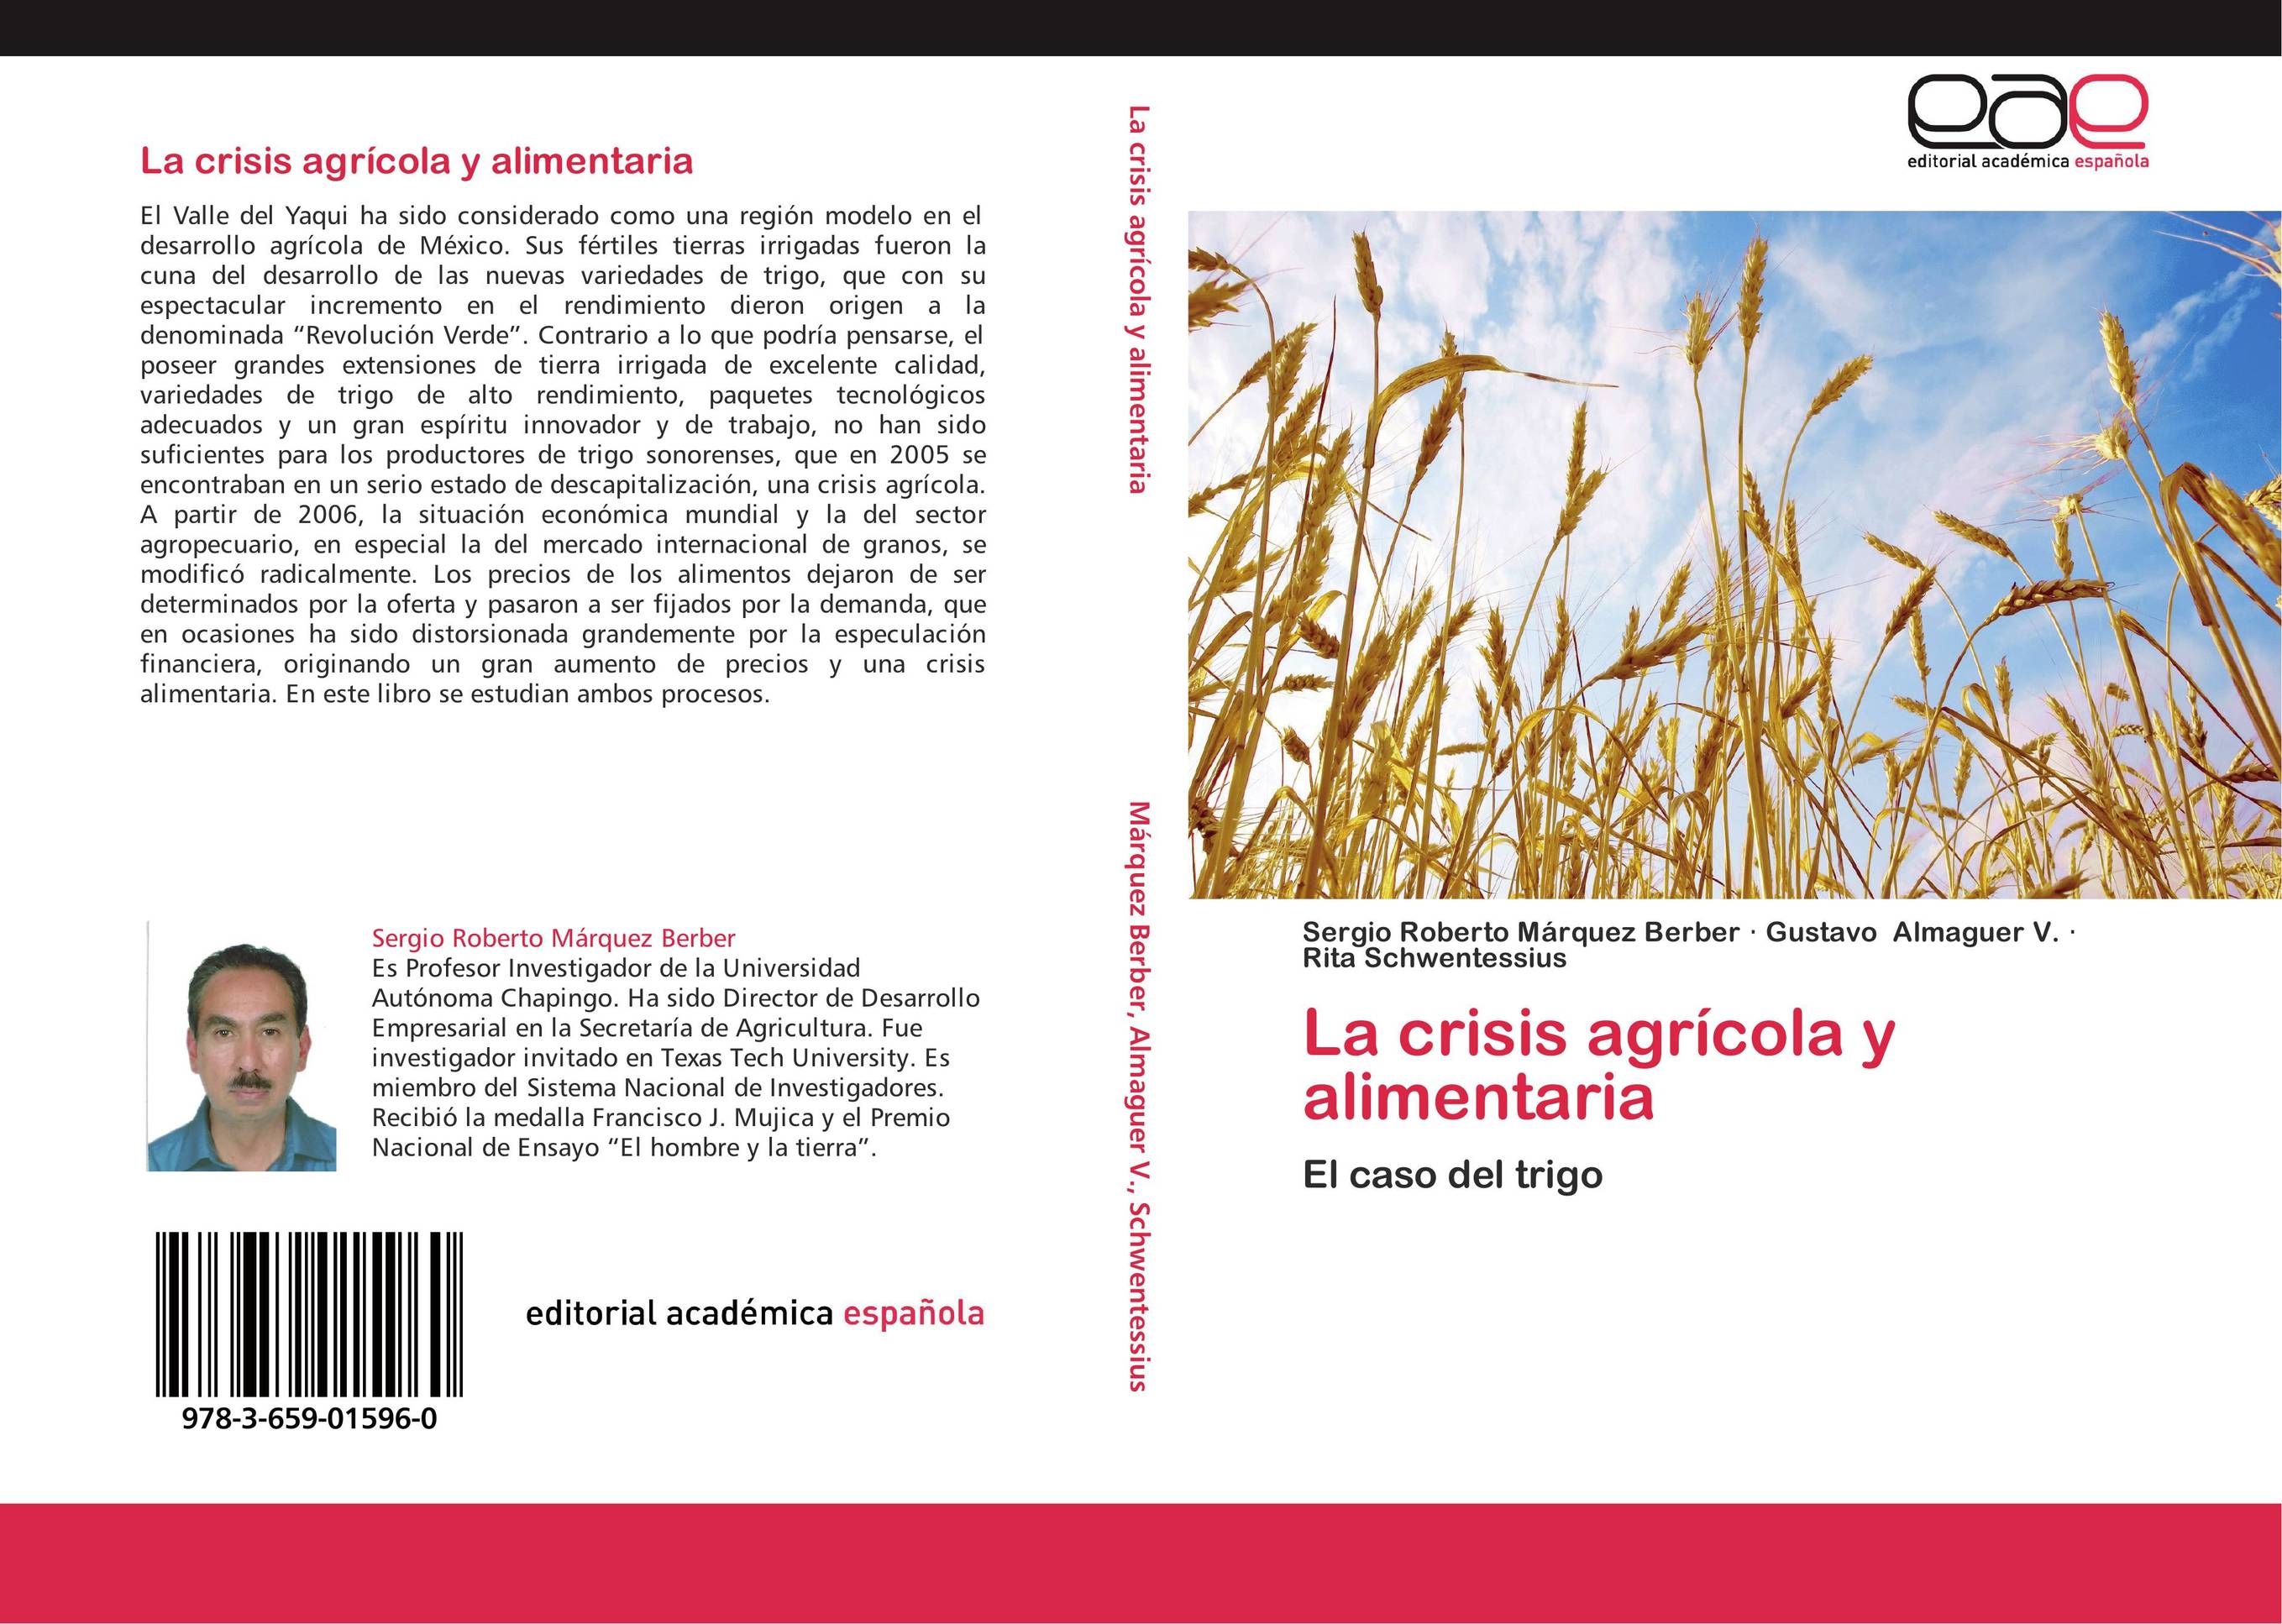 La crisis agrícola y alimentaria